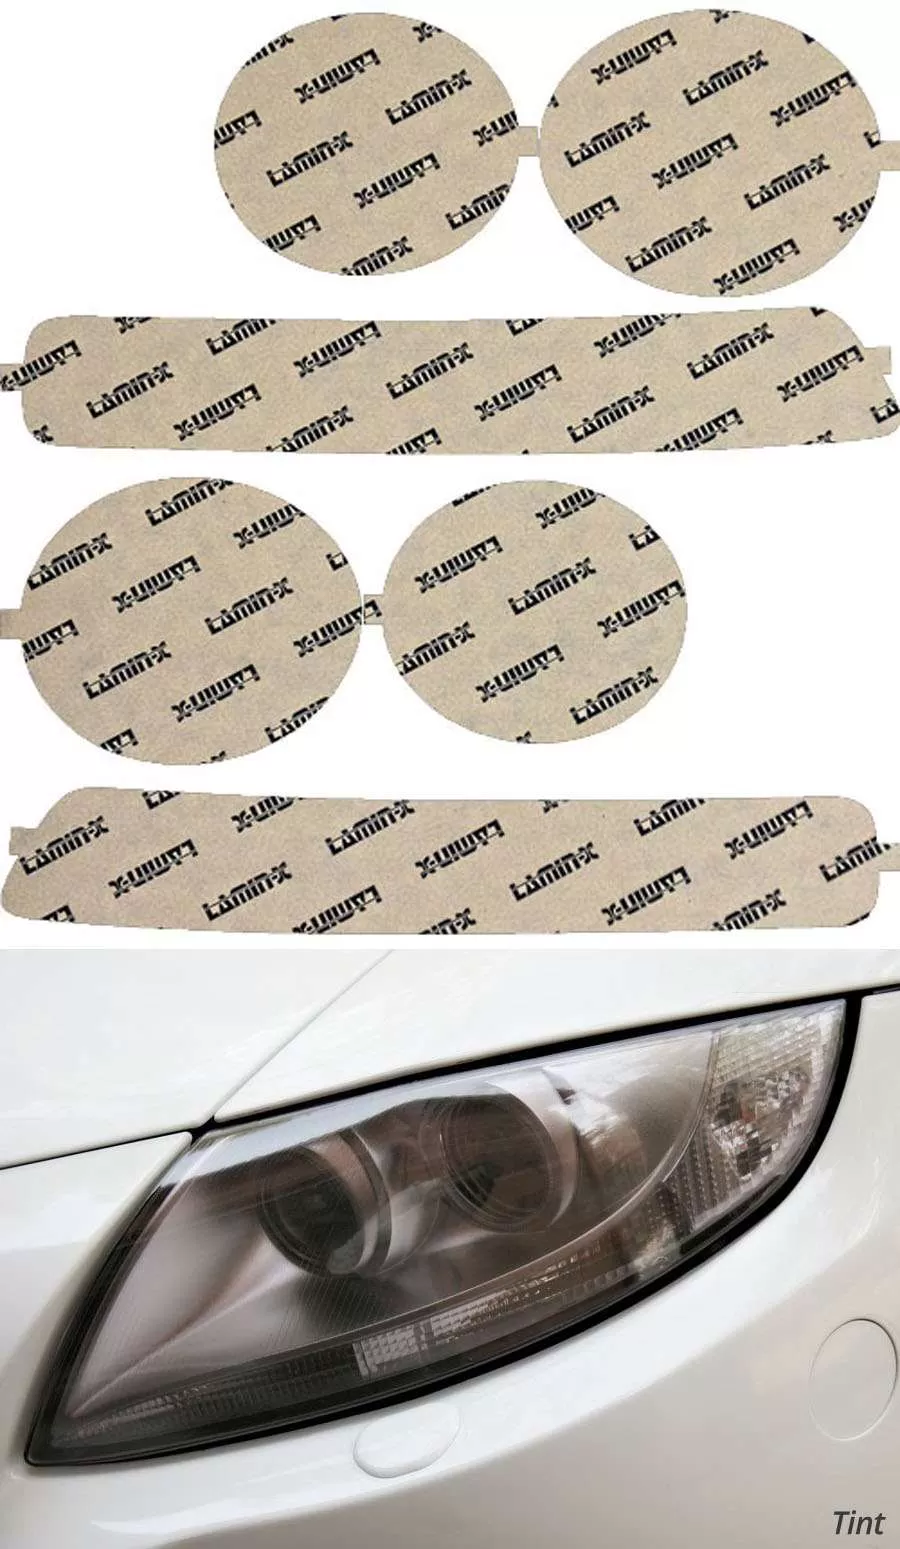 Lamin-X Acura Integra 1998-2002 Tint Headlight Covers - AC009T